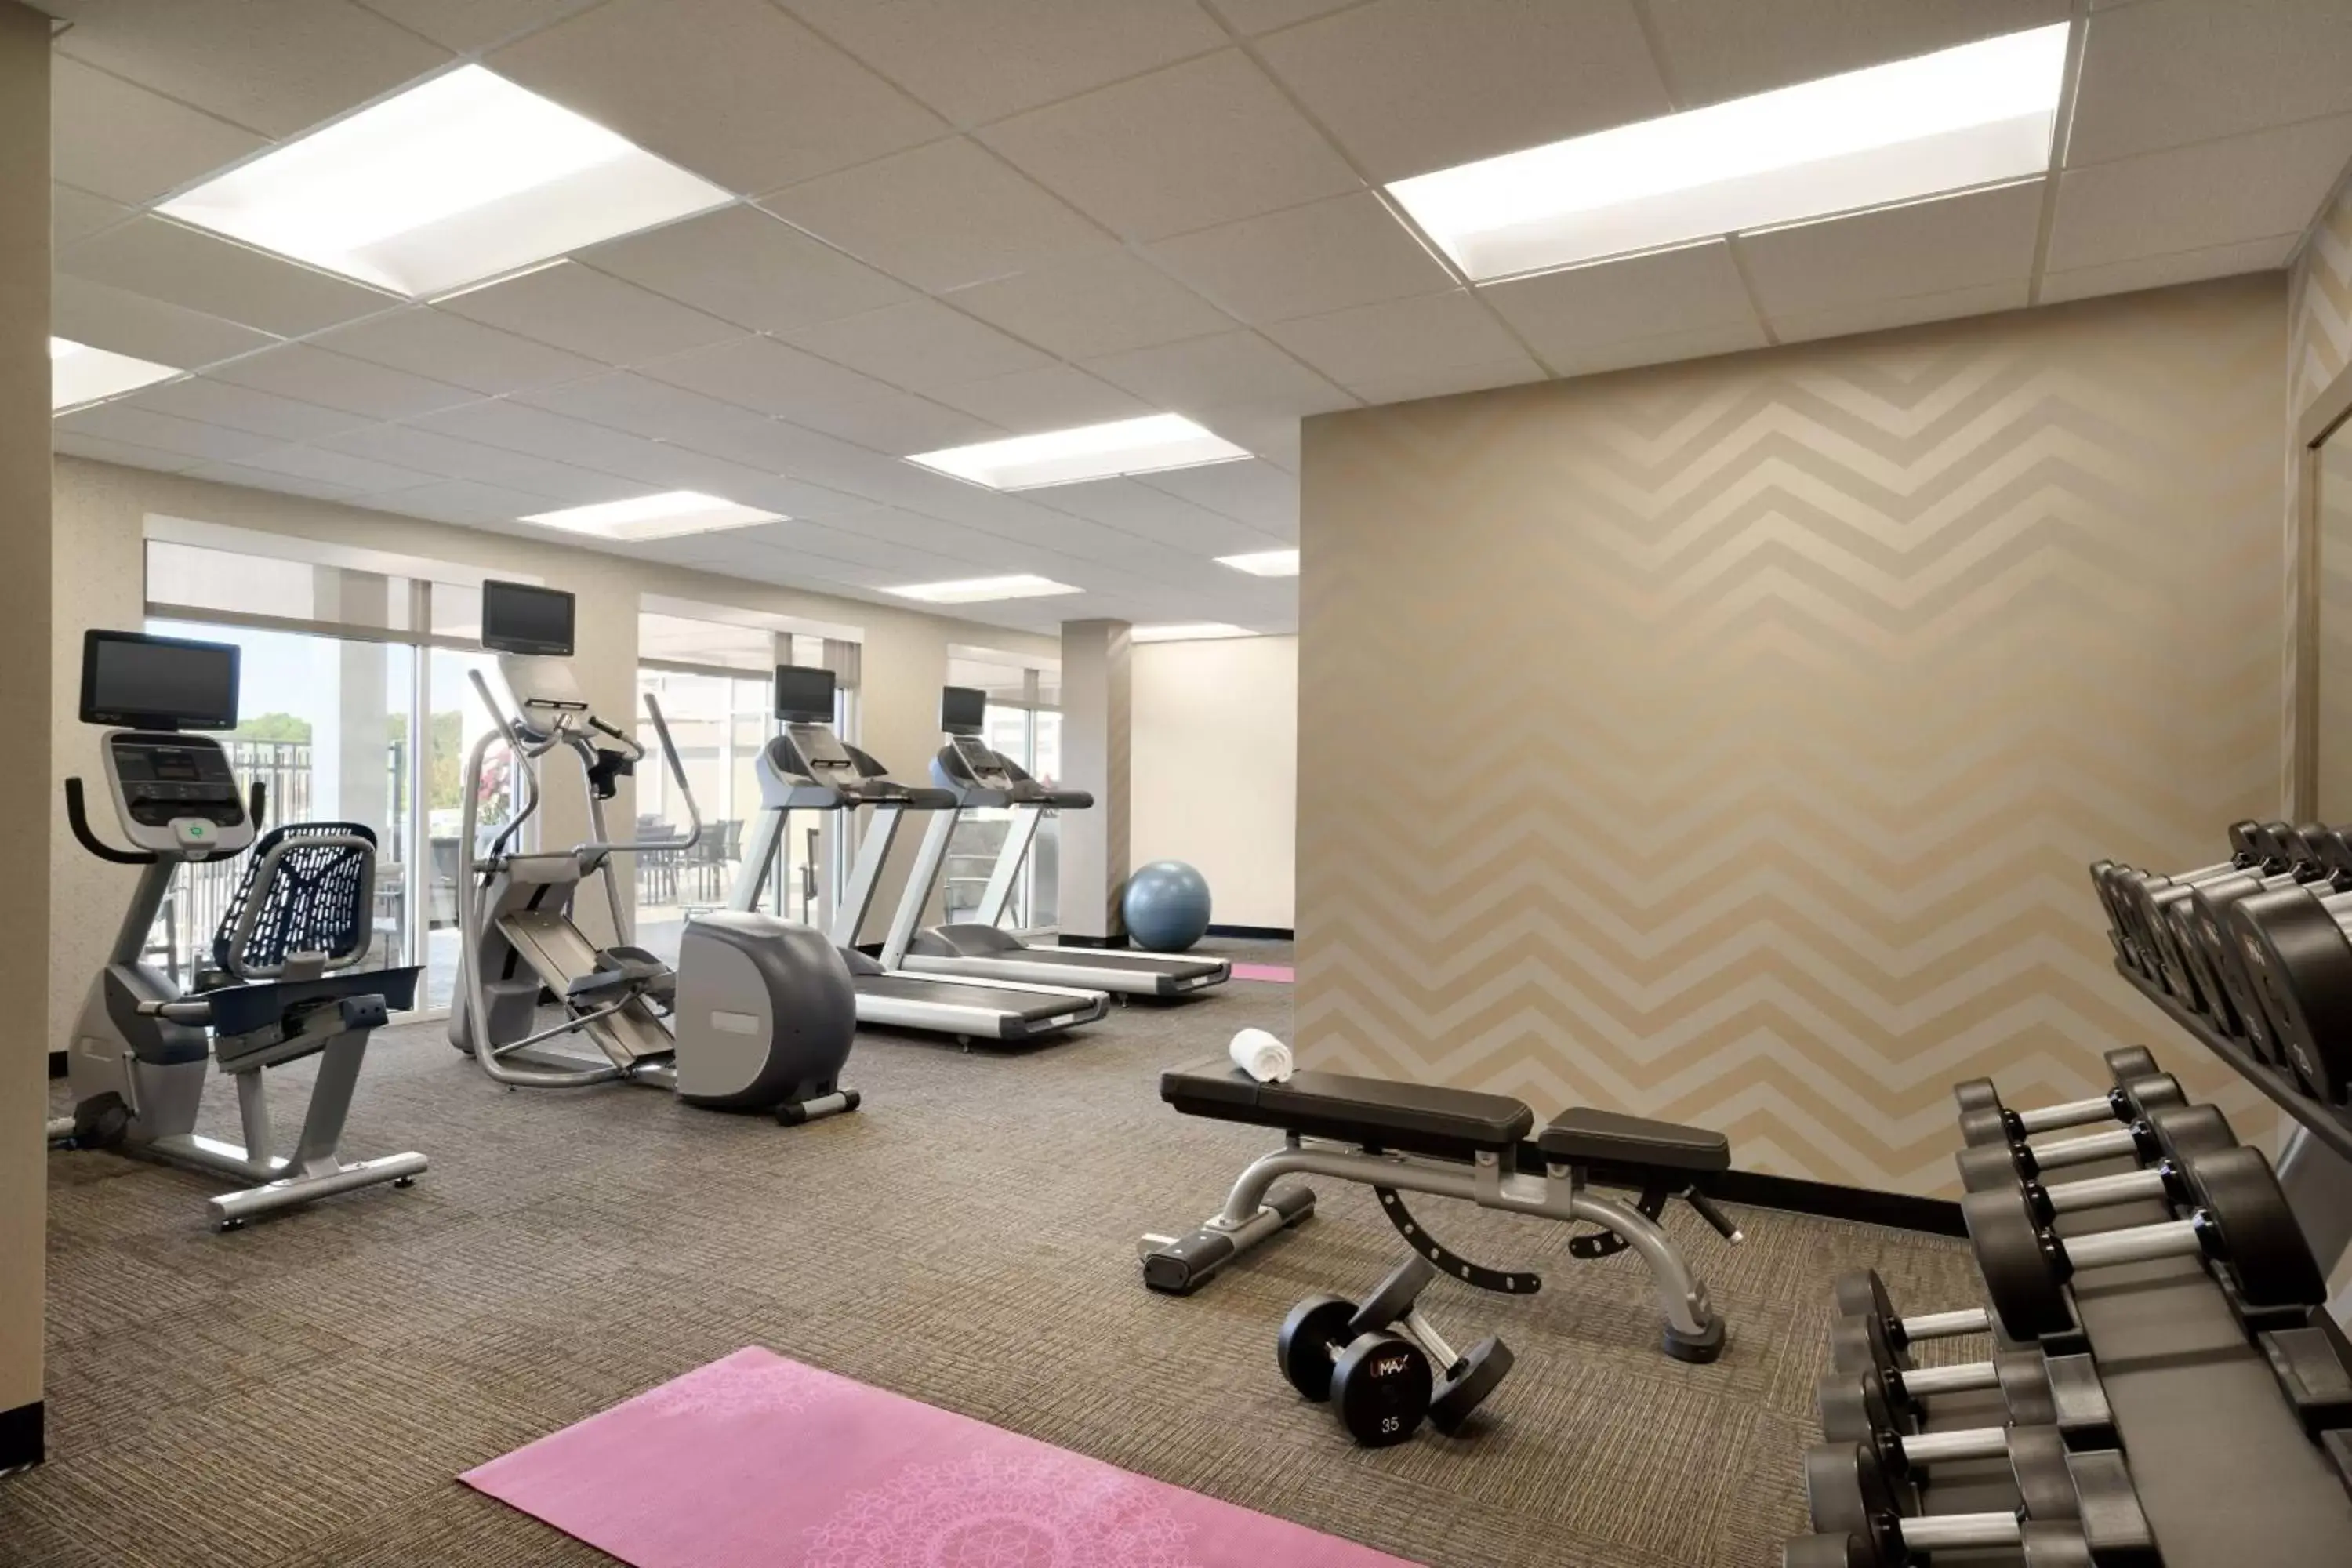 Fitness centre/facilities, Fitness Center/Facilities in Residence Inn by Marriott Winston-Salem Hanes Mall